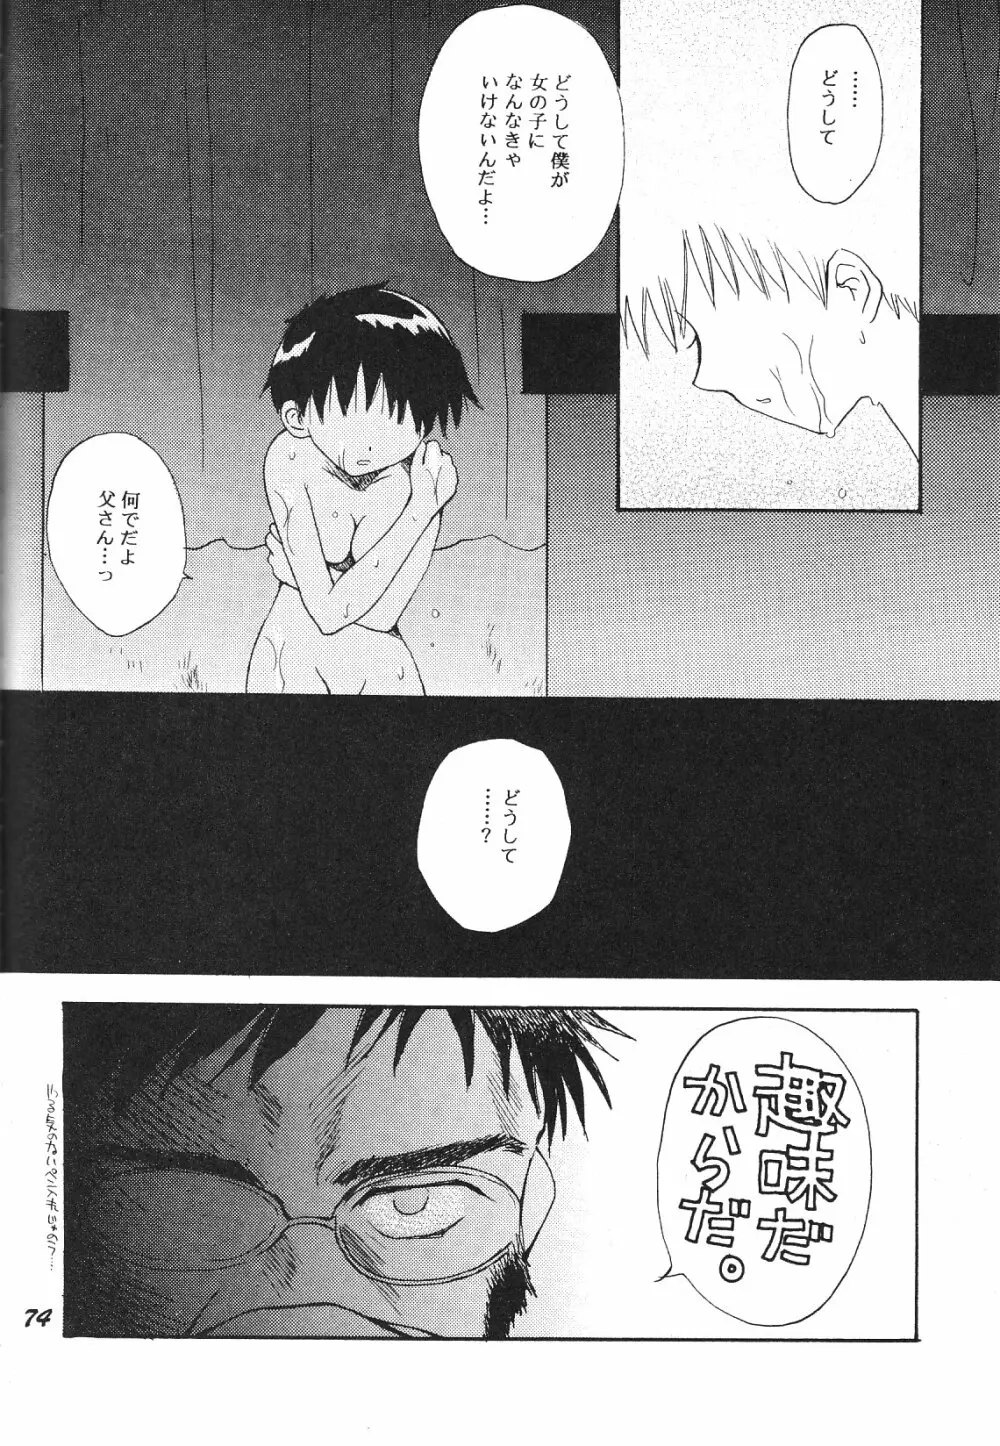 Maniac Juice 女シンジ再録集 '96-'99 - page74